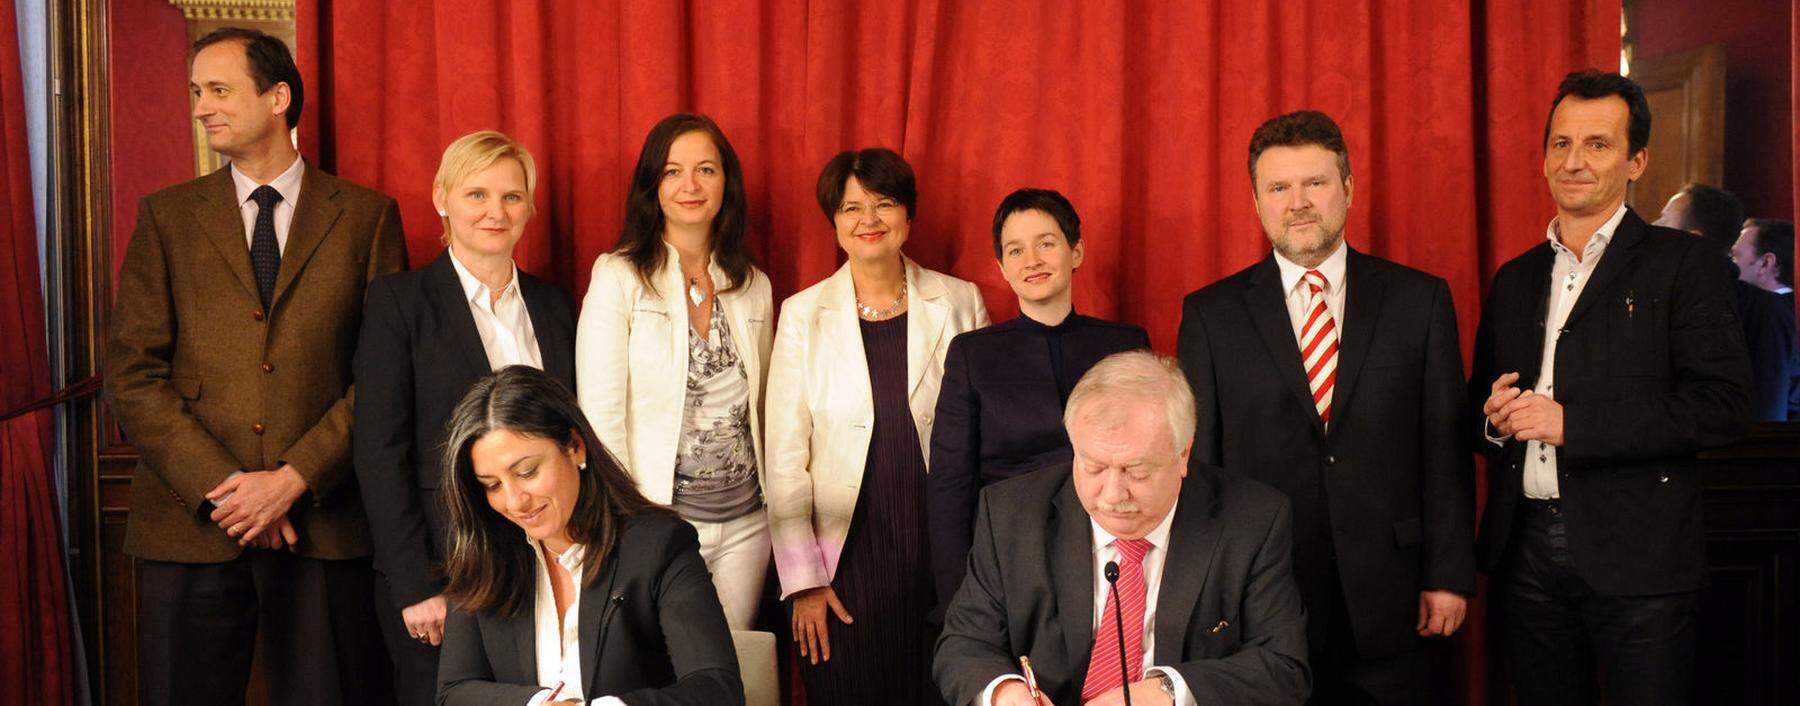 Maria Vassilakou und Michael Häupl unterzeichnen den Koalitionspakt.